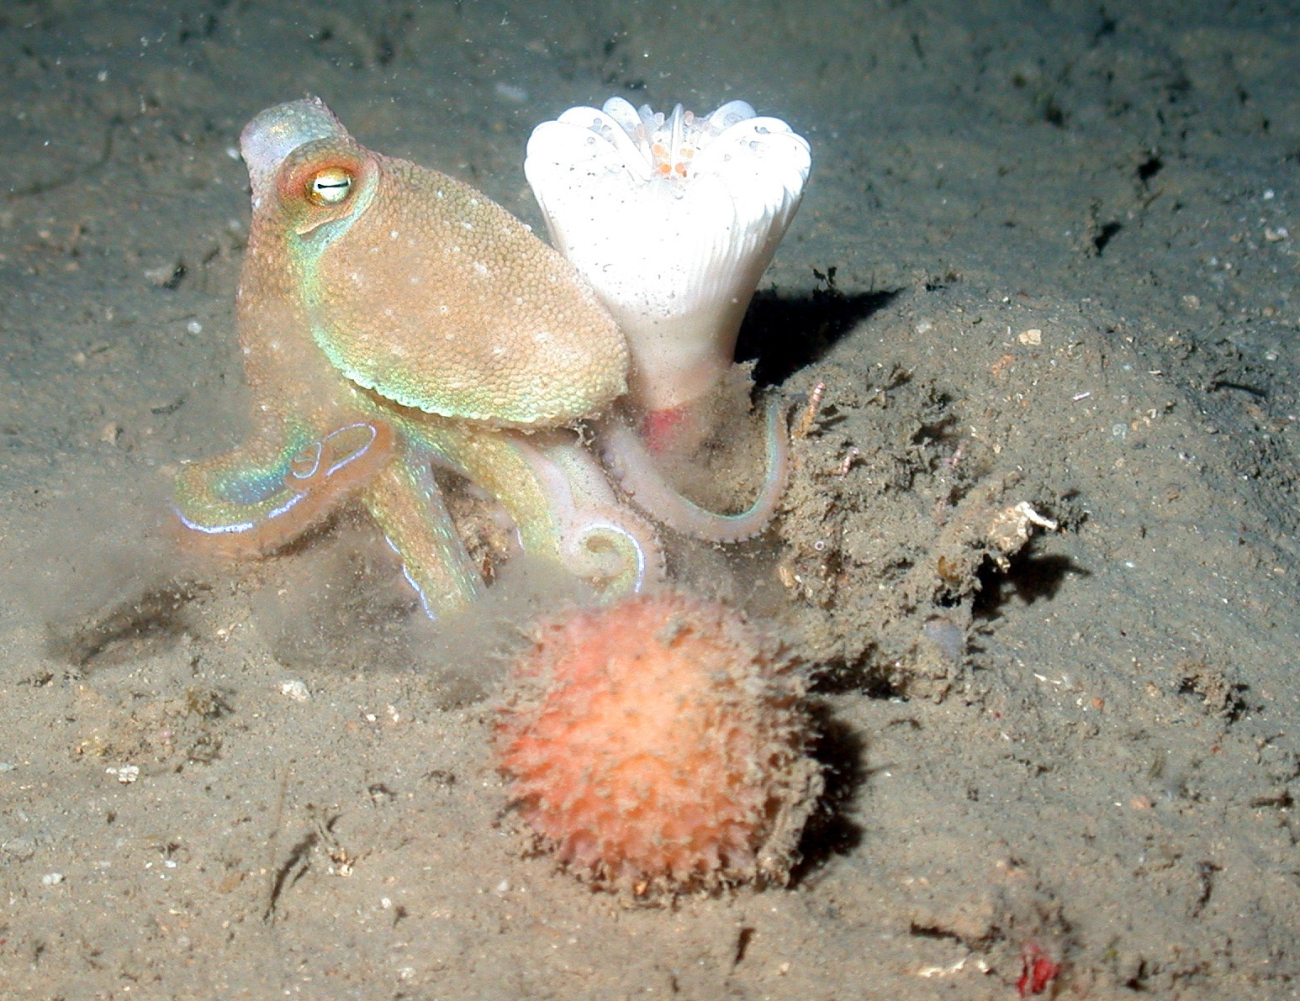 An octopus